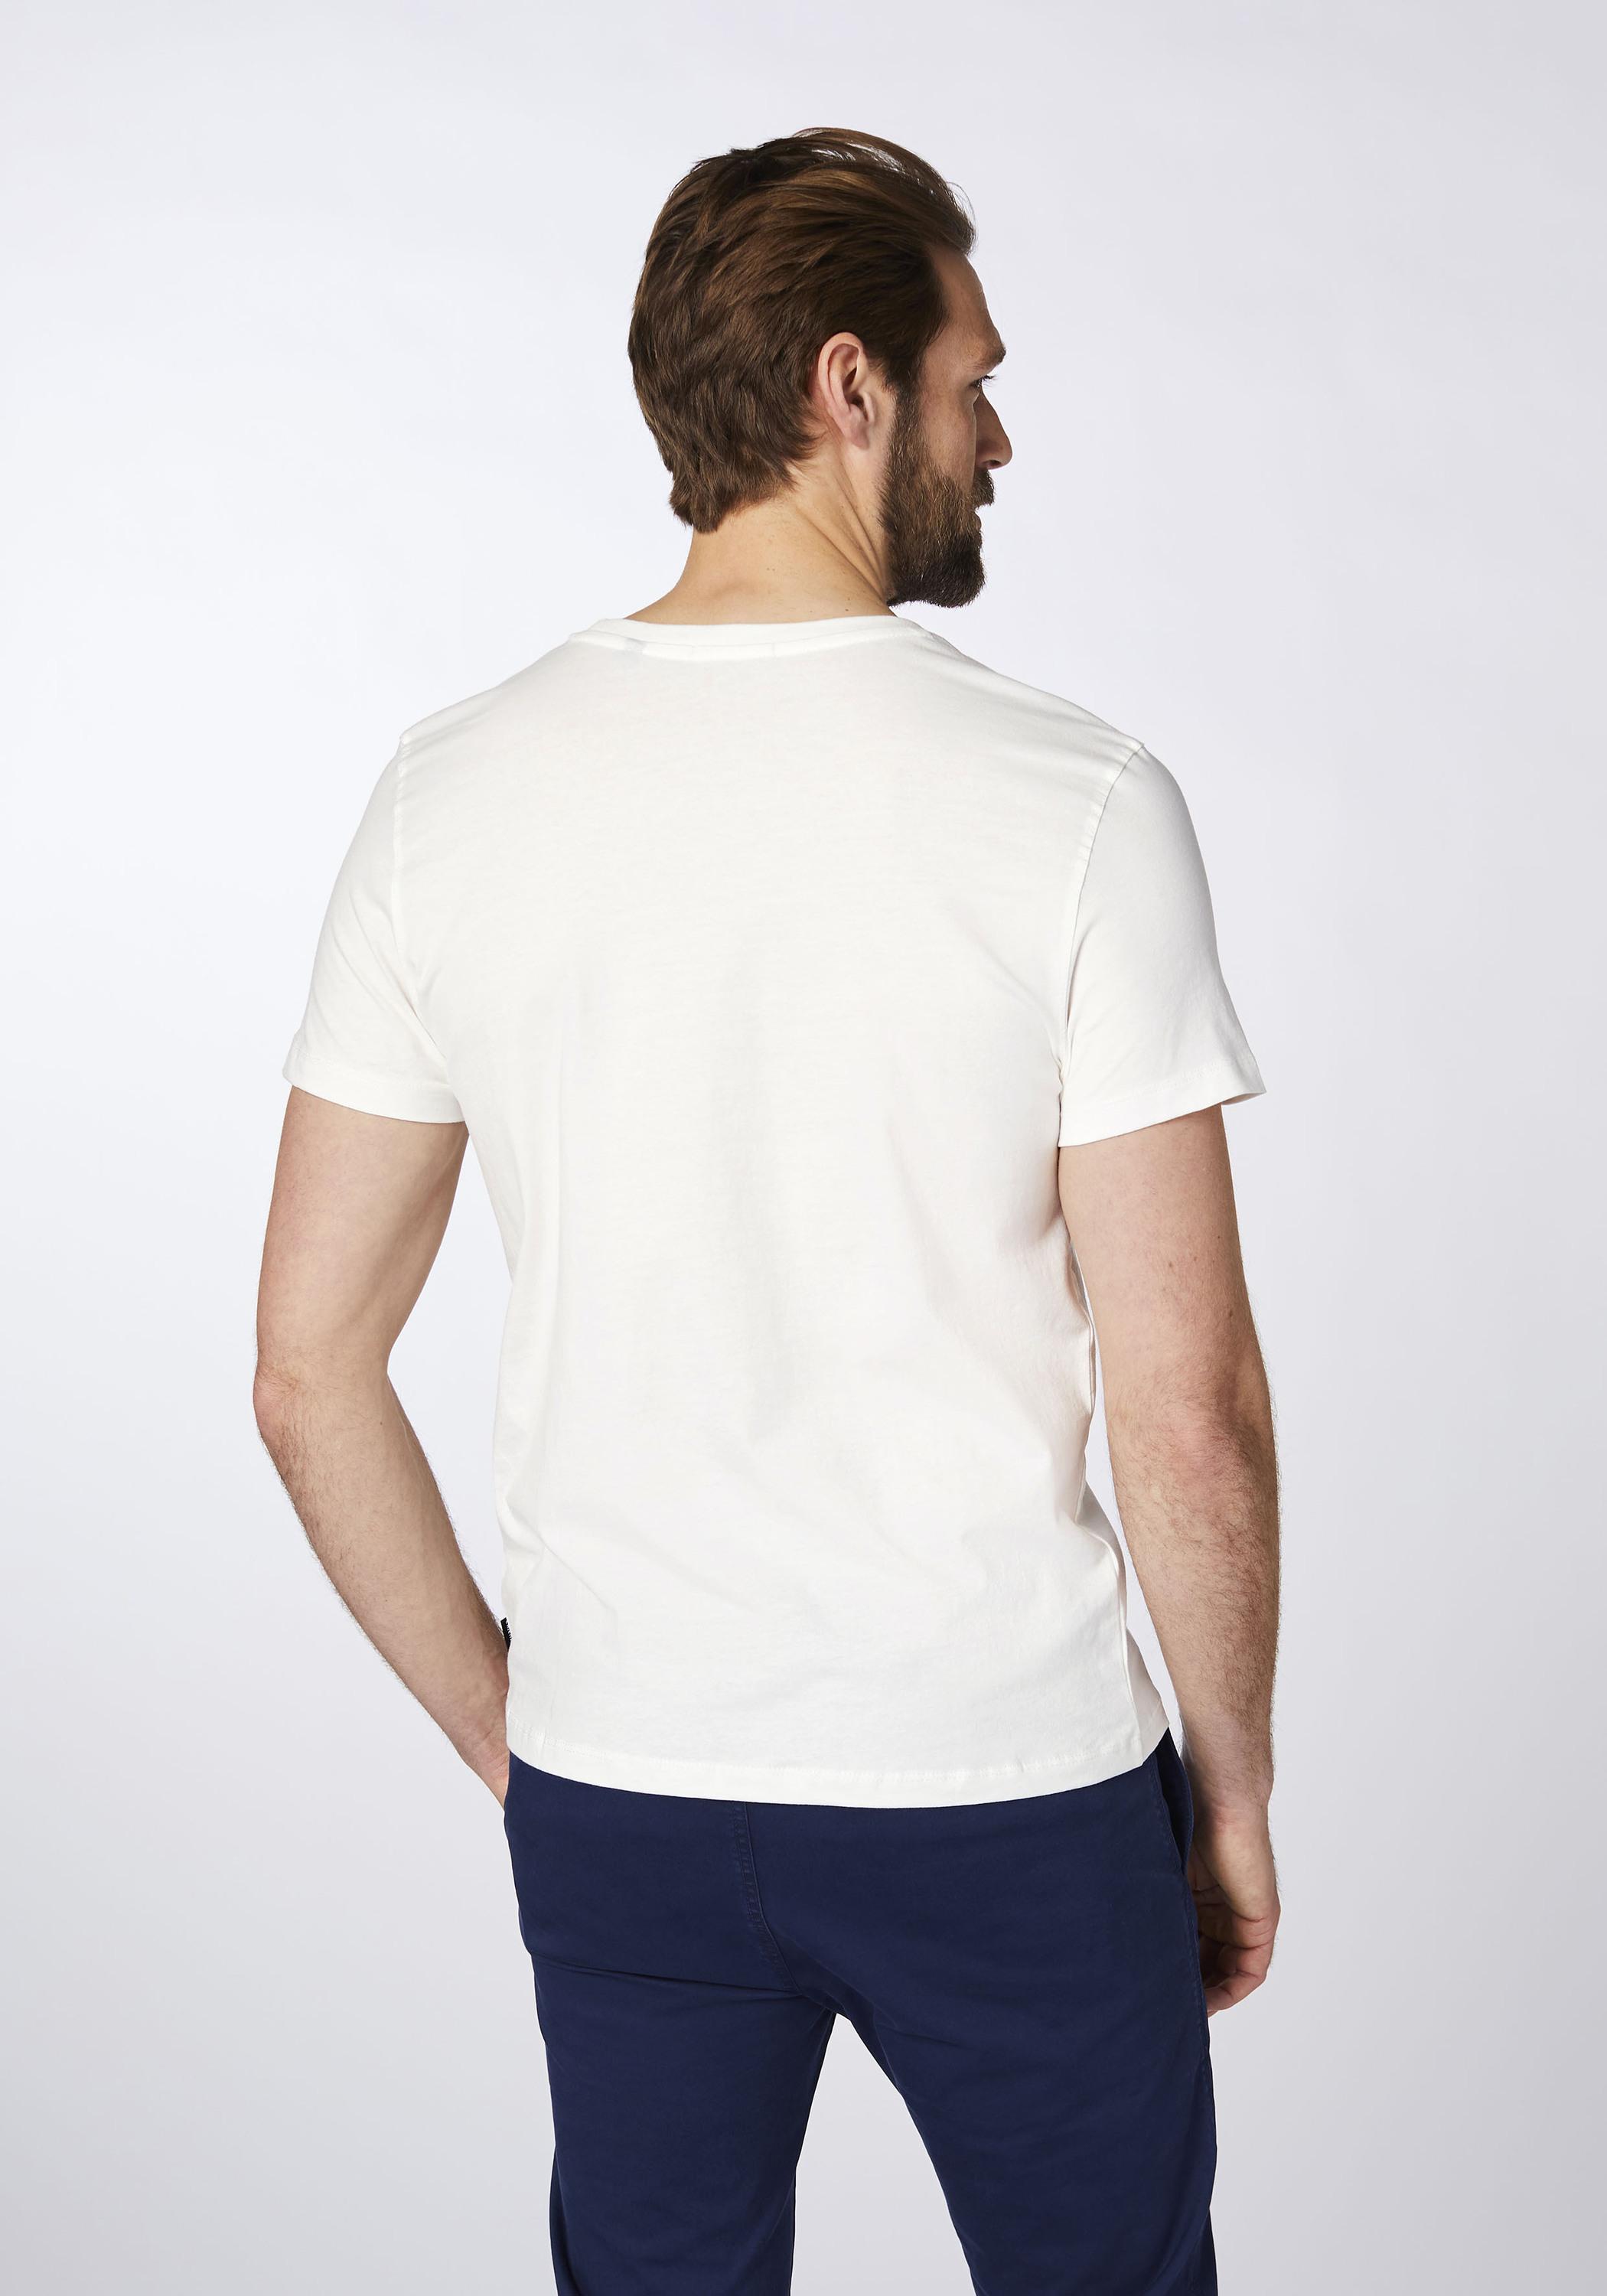 Chiemsee T-Shirt T-Shirt Herren Shop Dif SportScheck von kaufen im Wht/Md Online Grn